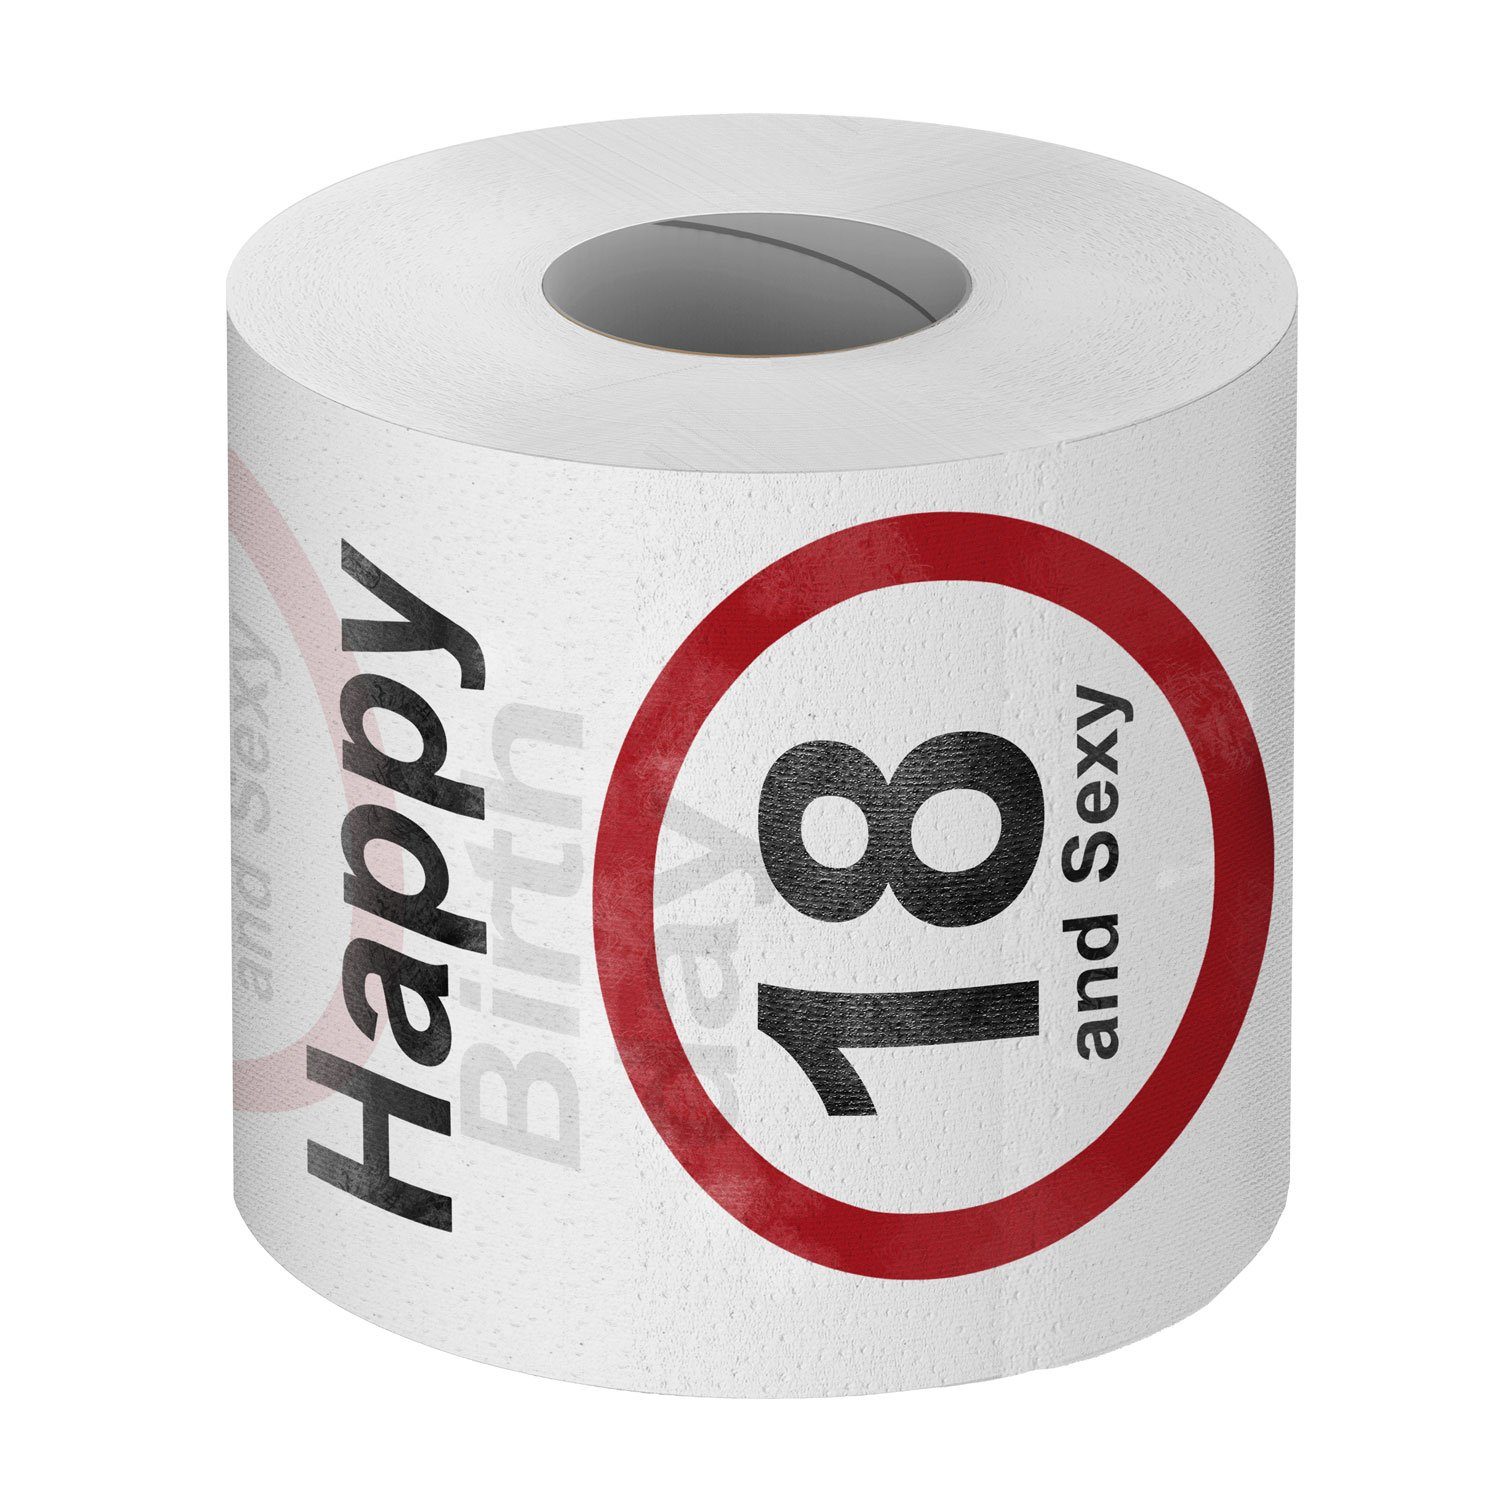 Goods+Gadgets Papierdekoration Lustiges Klopapier Toilettenpapier 18. Geburtstag, zum Fun Geschenkartikel